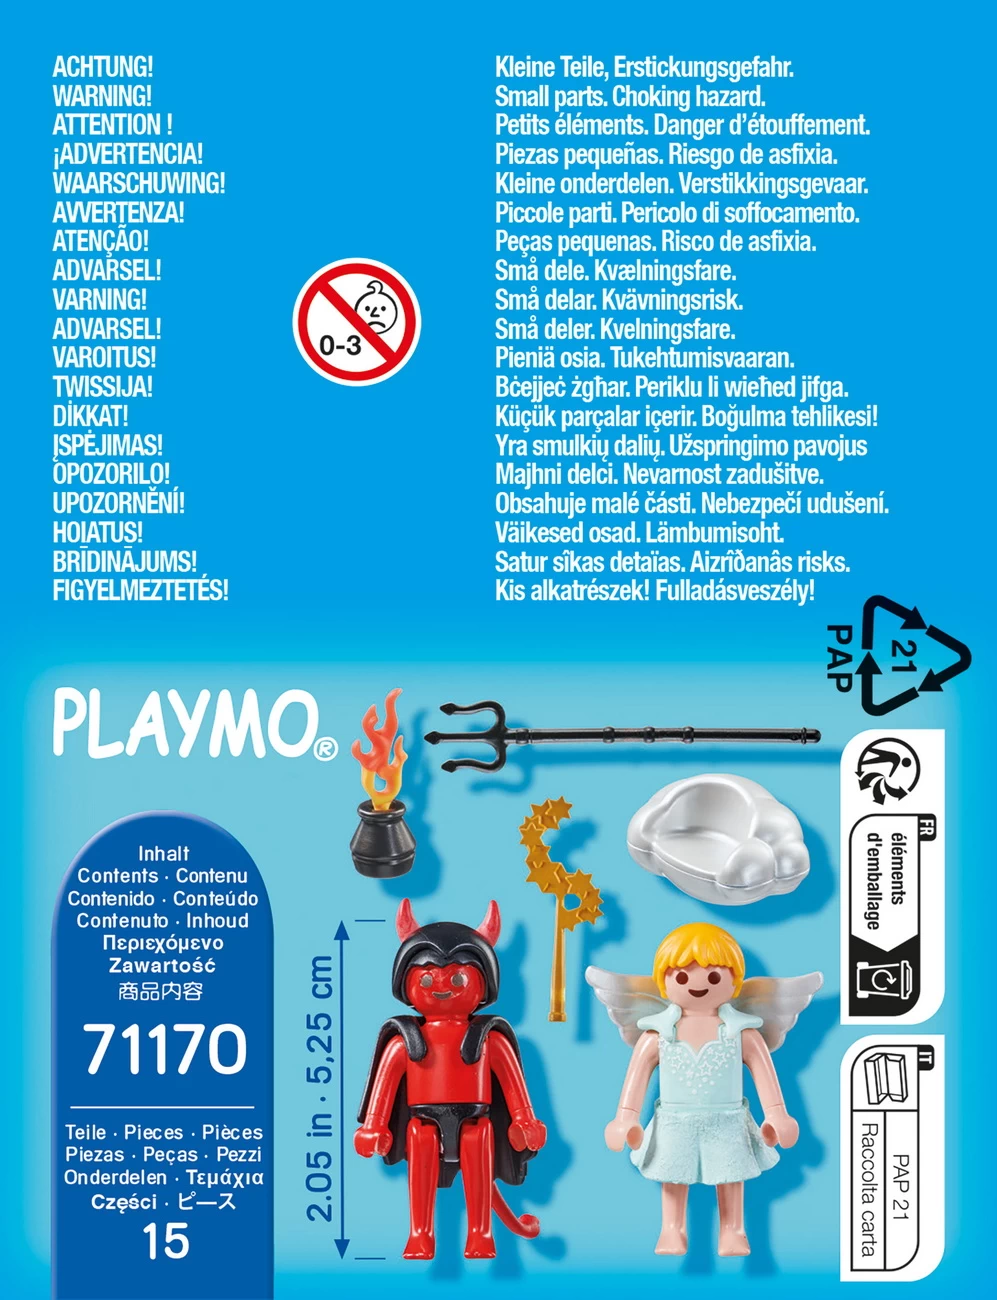 Playmobil 71170 - Engelchen und Teufelchen - Special Plus